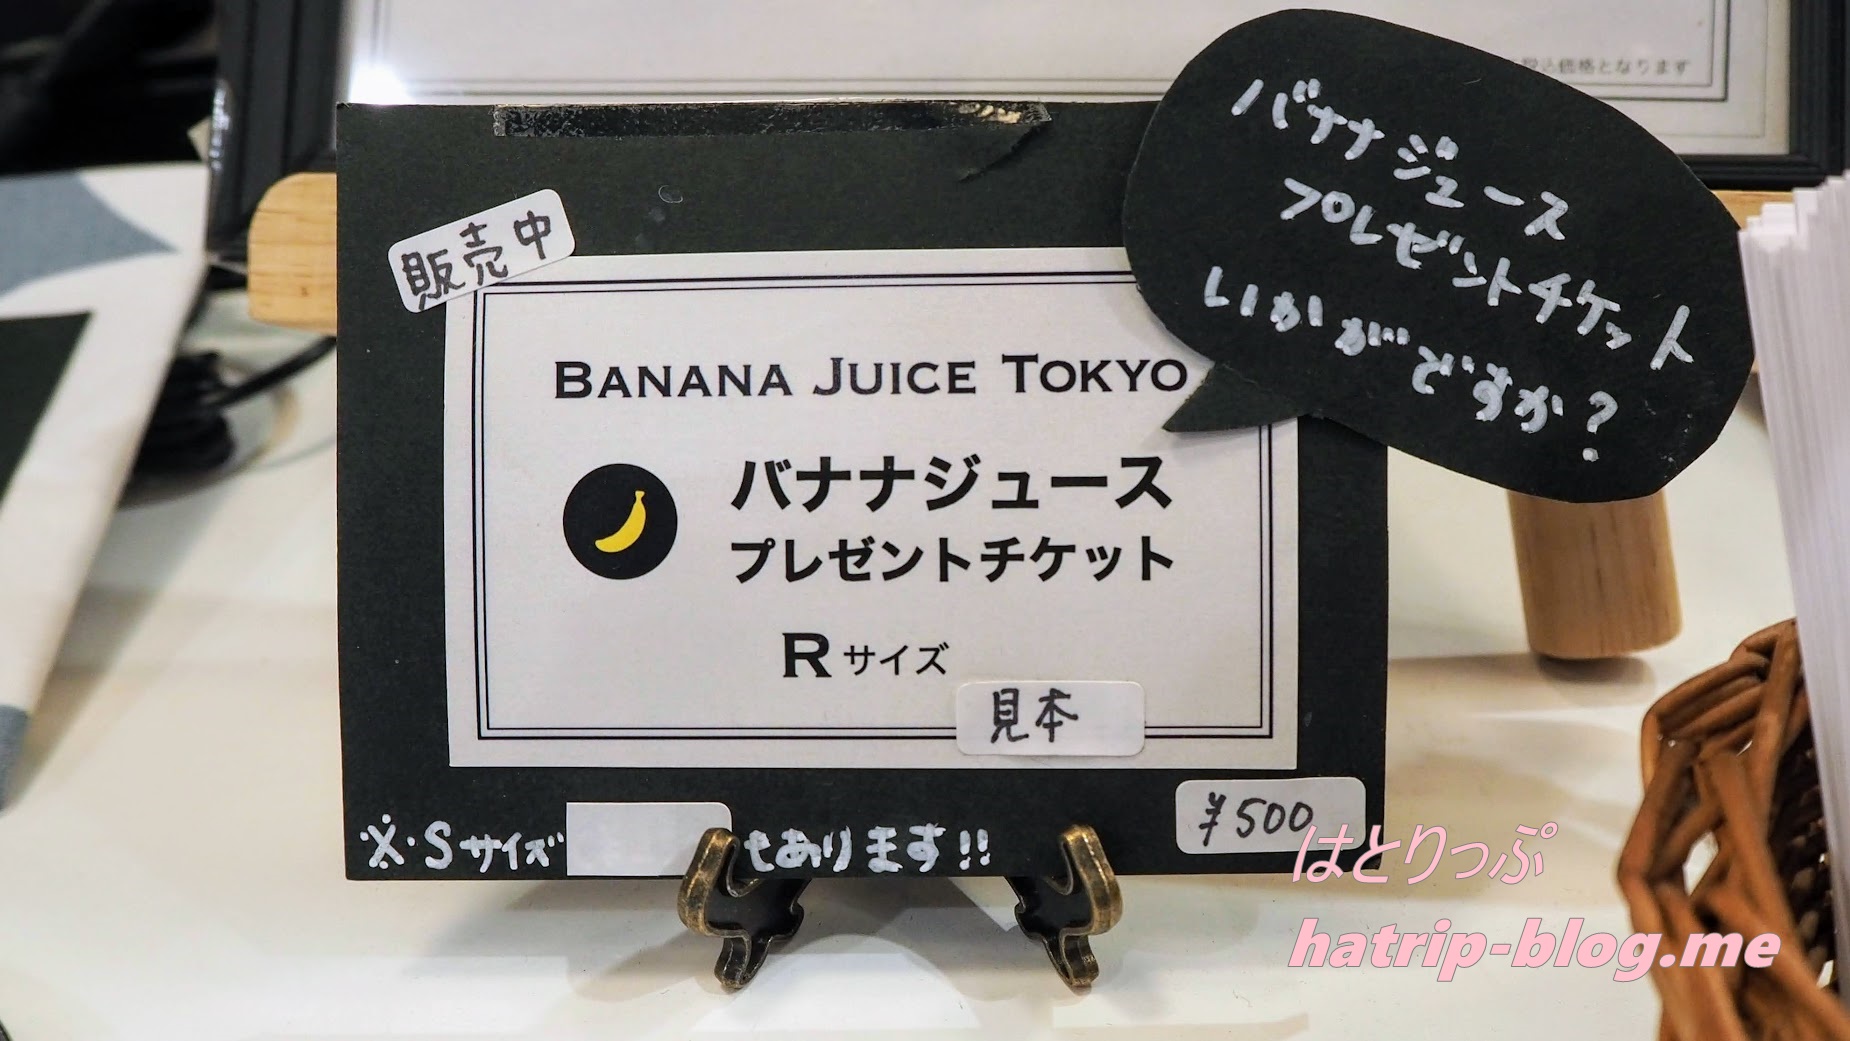 東京都中央区 日本橋 BANANA JUICE TOKYO バナナジュース プレゼント チケット